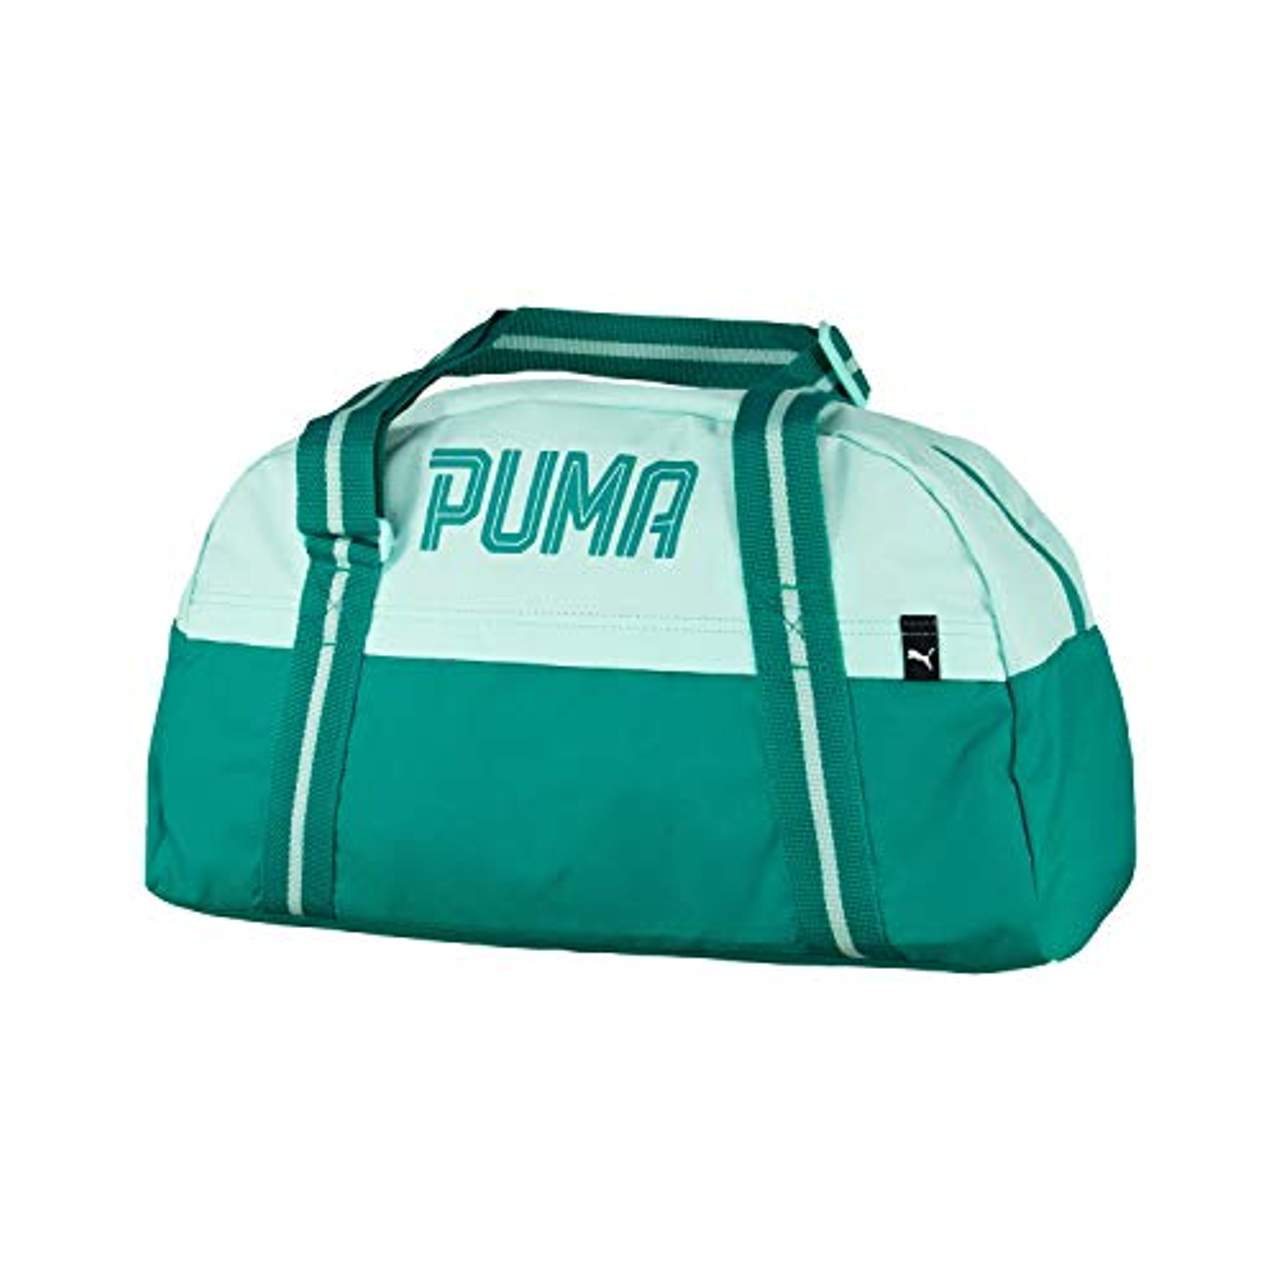 PUMA Fundamentals Sports Bag Female Sporttasche